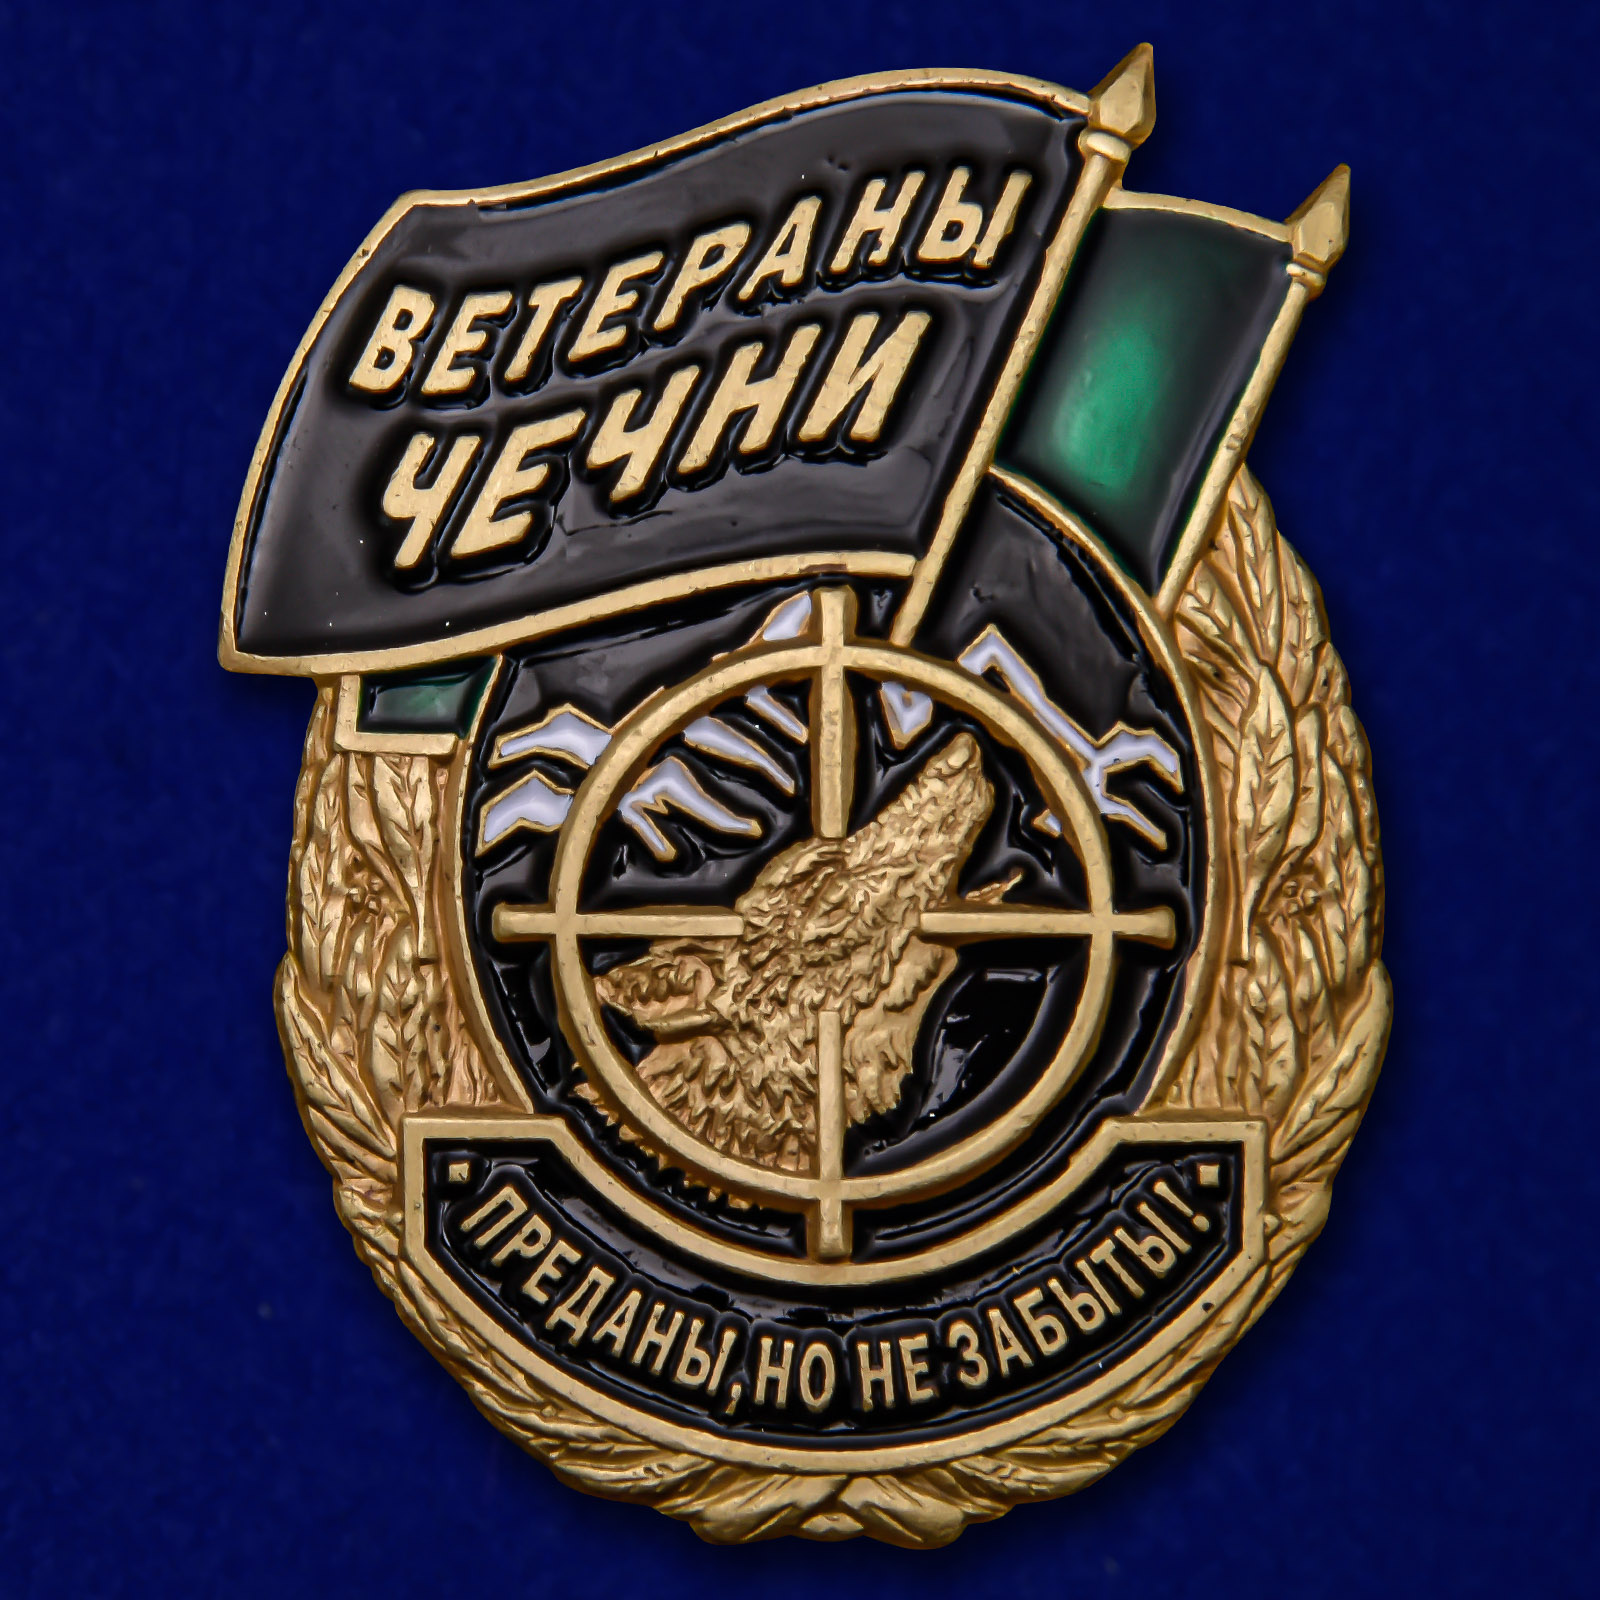 Купить знак "Ветераны Чечни" в Военпро